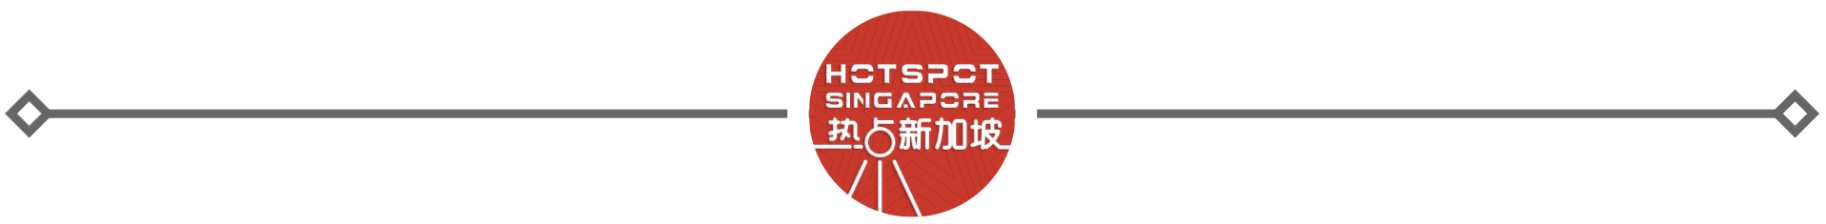 新加坡一烤鱼店发生意外火灾  烟雾弥漫-热点新加坡